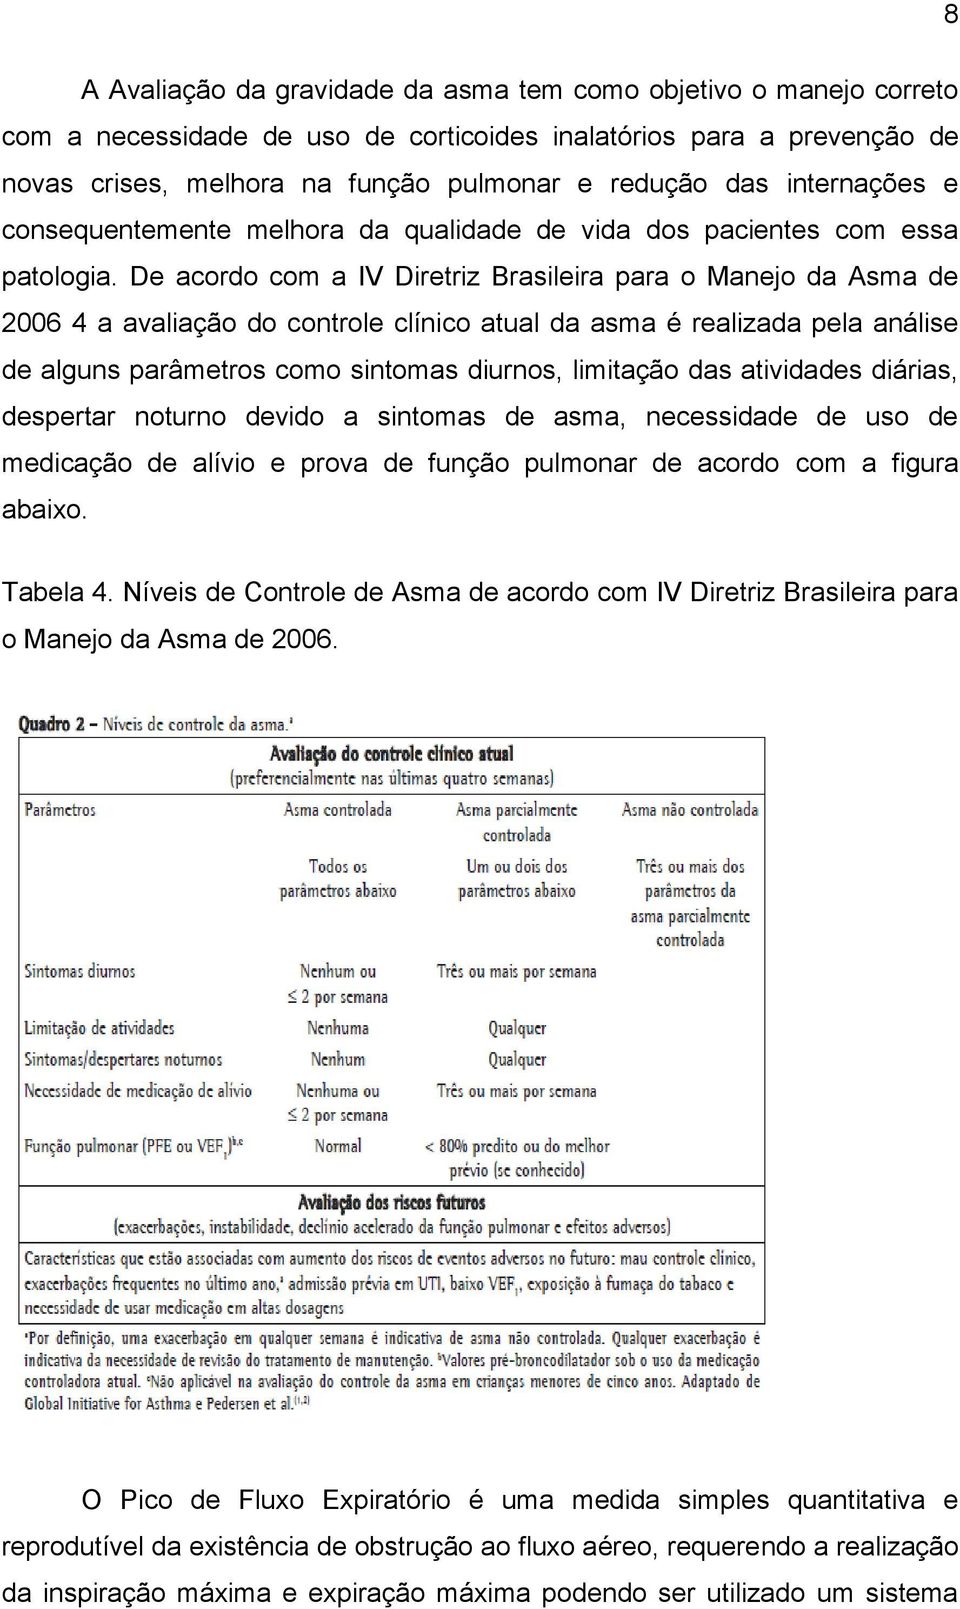 De acordo com a IV Diretriz Brasileira para o Manejo da Asma de 2006 4 a avaliação do controle clínico atual da asma é realizada pela análise de alguns parâmetros como sintomas diurnos, limitação das